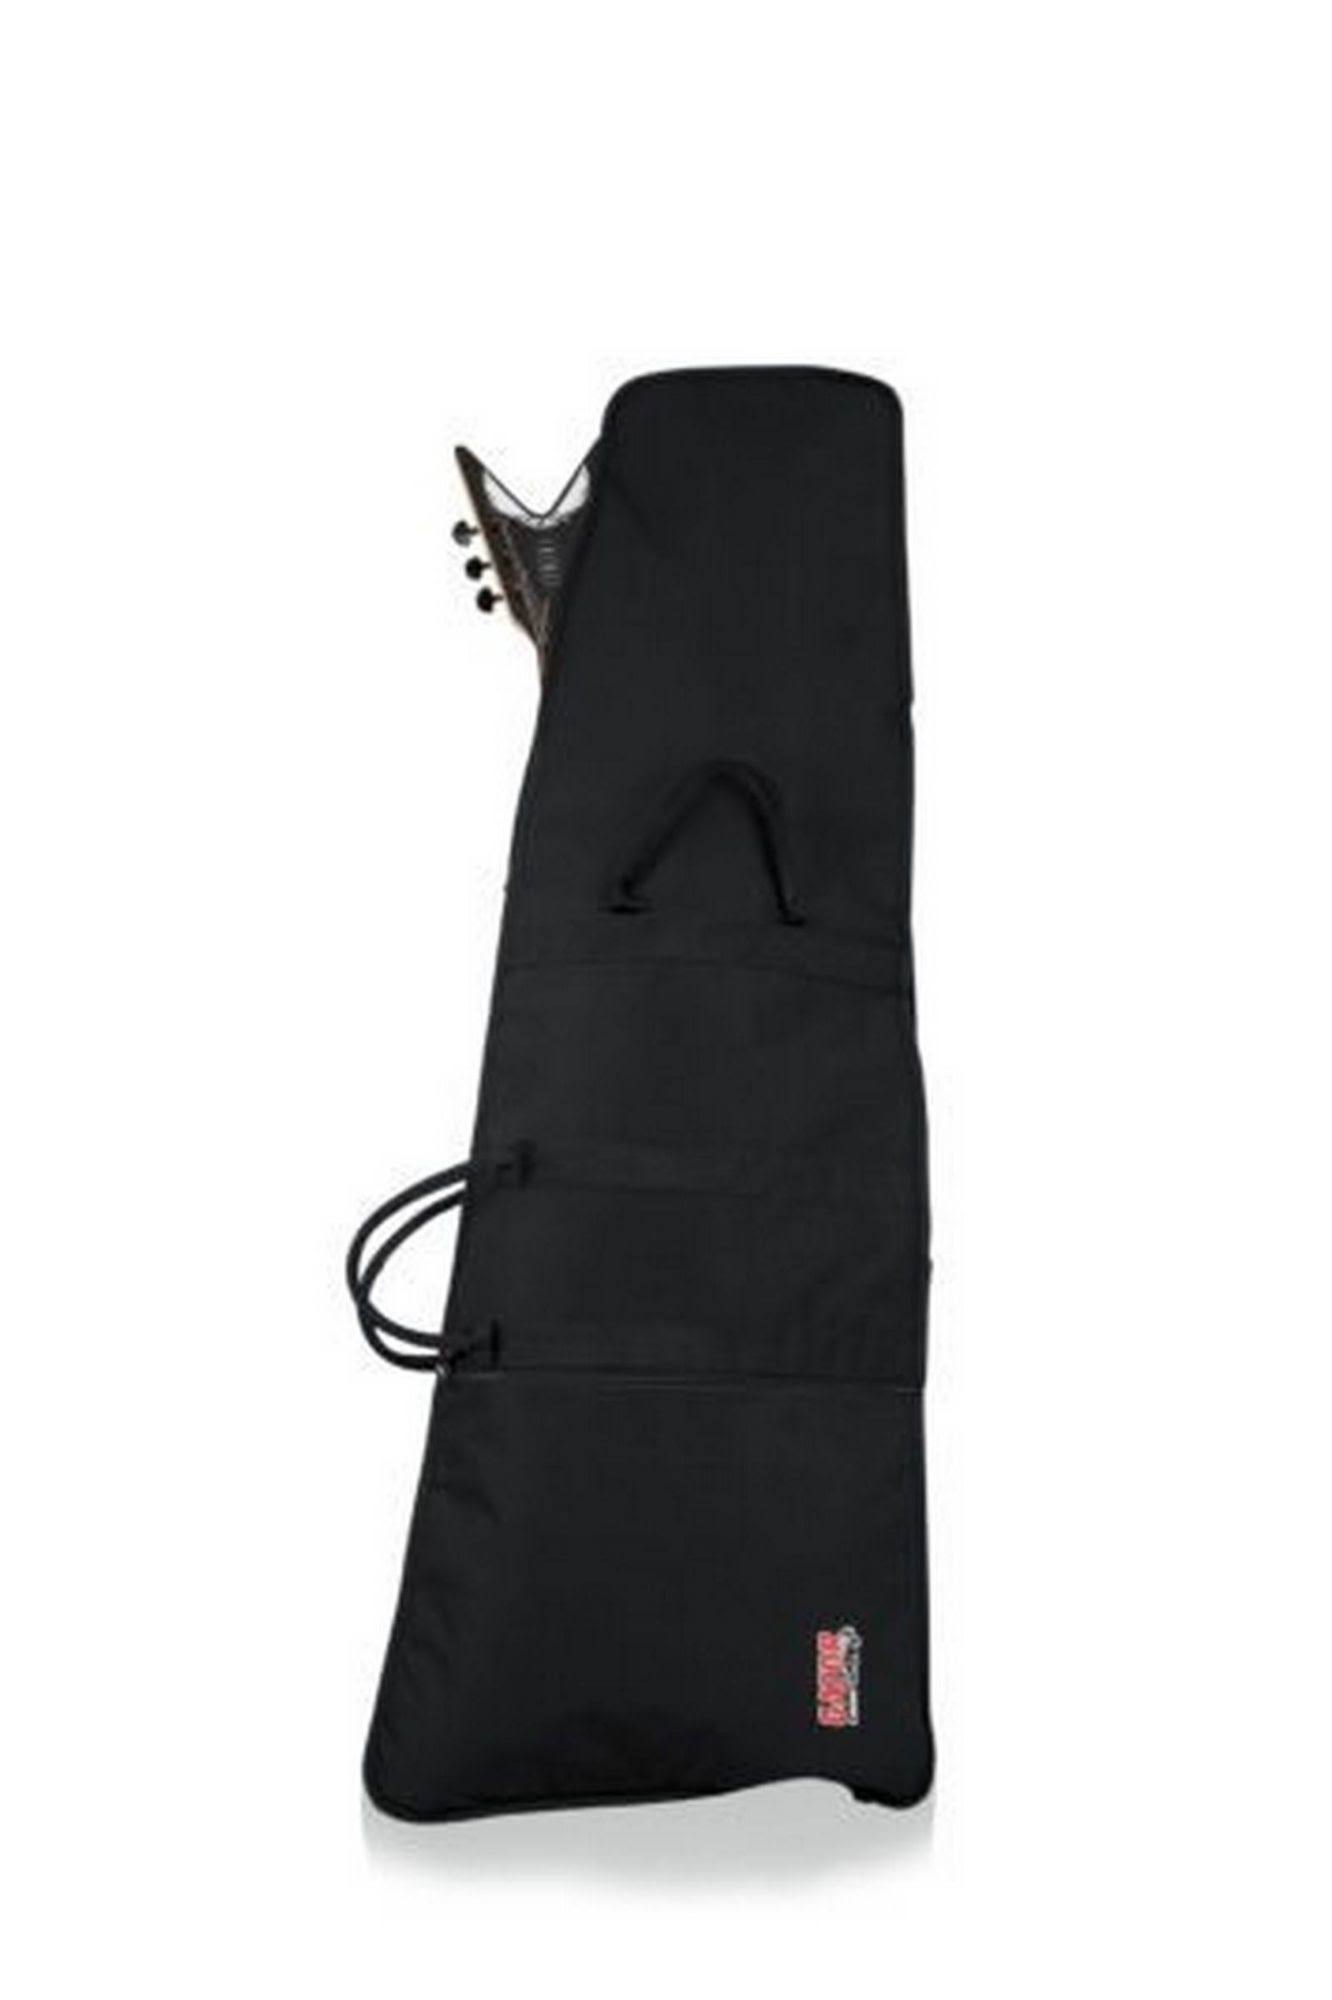 Gator Economy Style Extreme Shaped Guitar Gig Bag